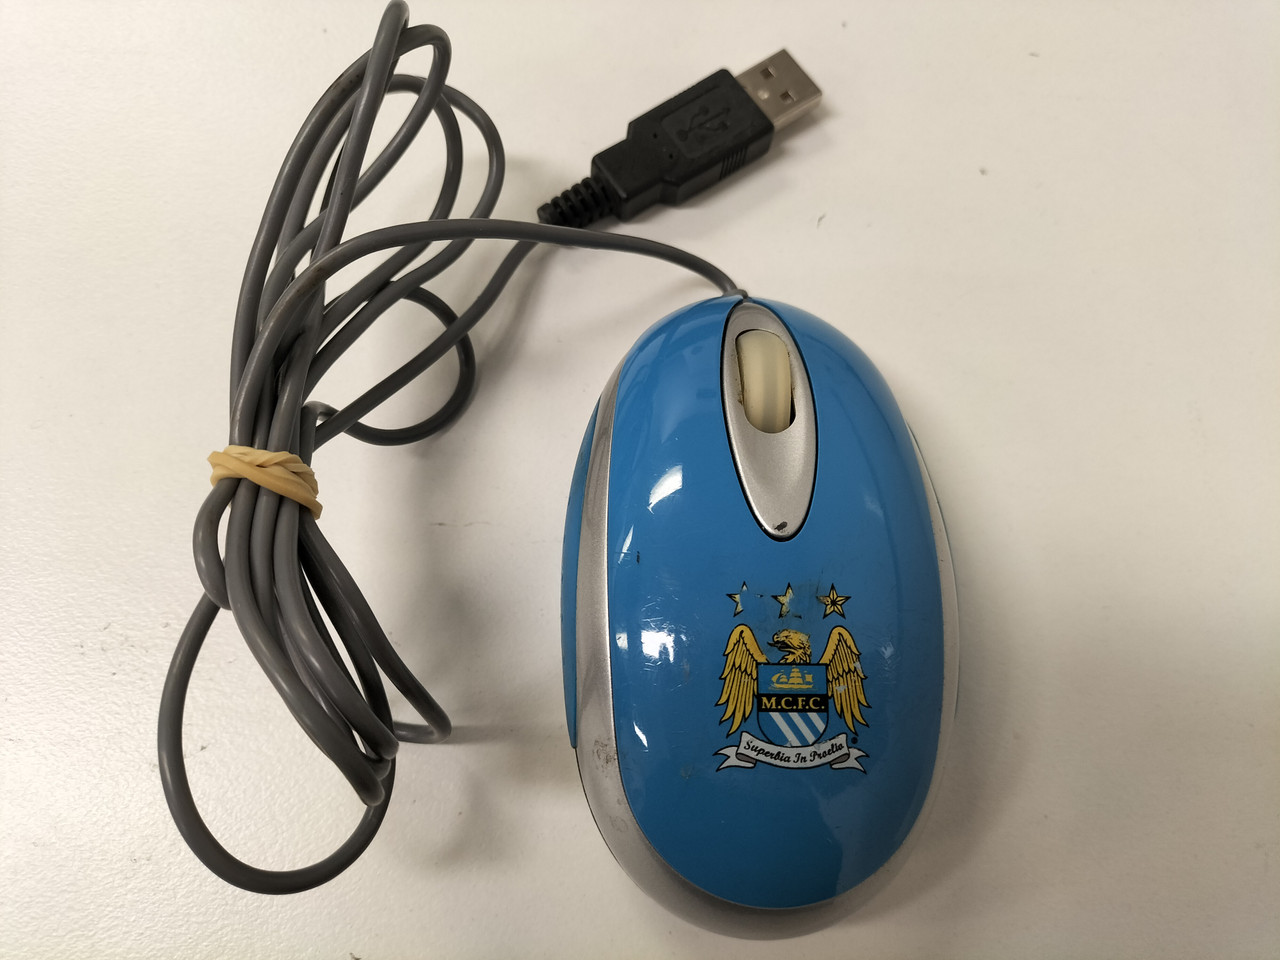 MCFC (SP-3000) USB 2-Button Optical Mouse (SP-3000)